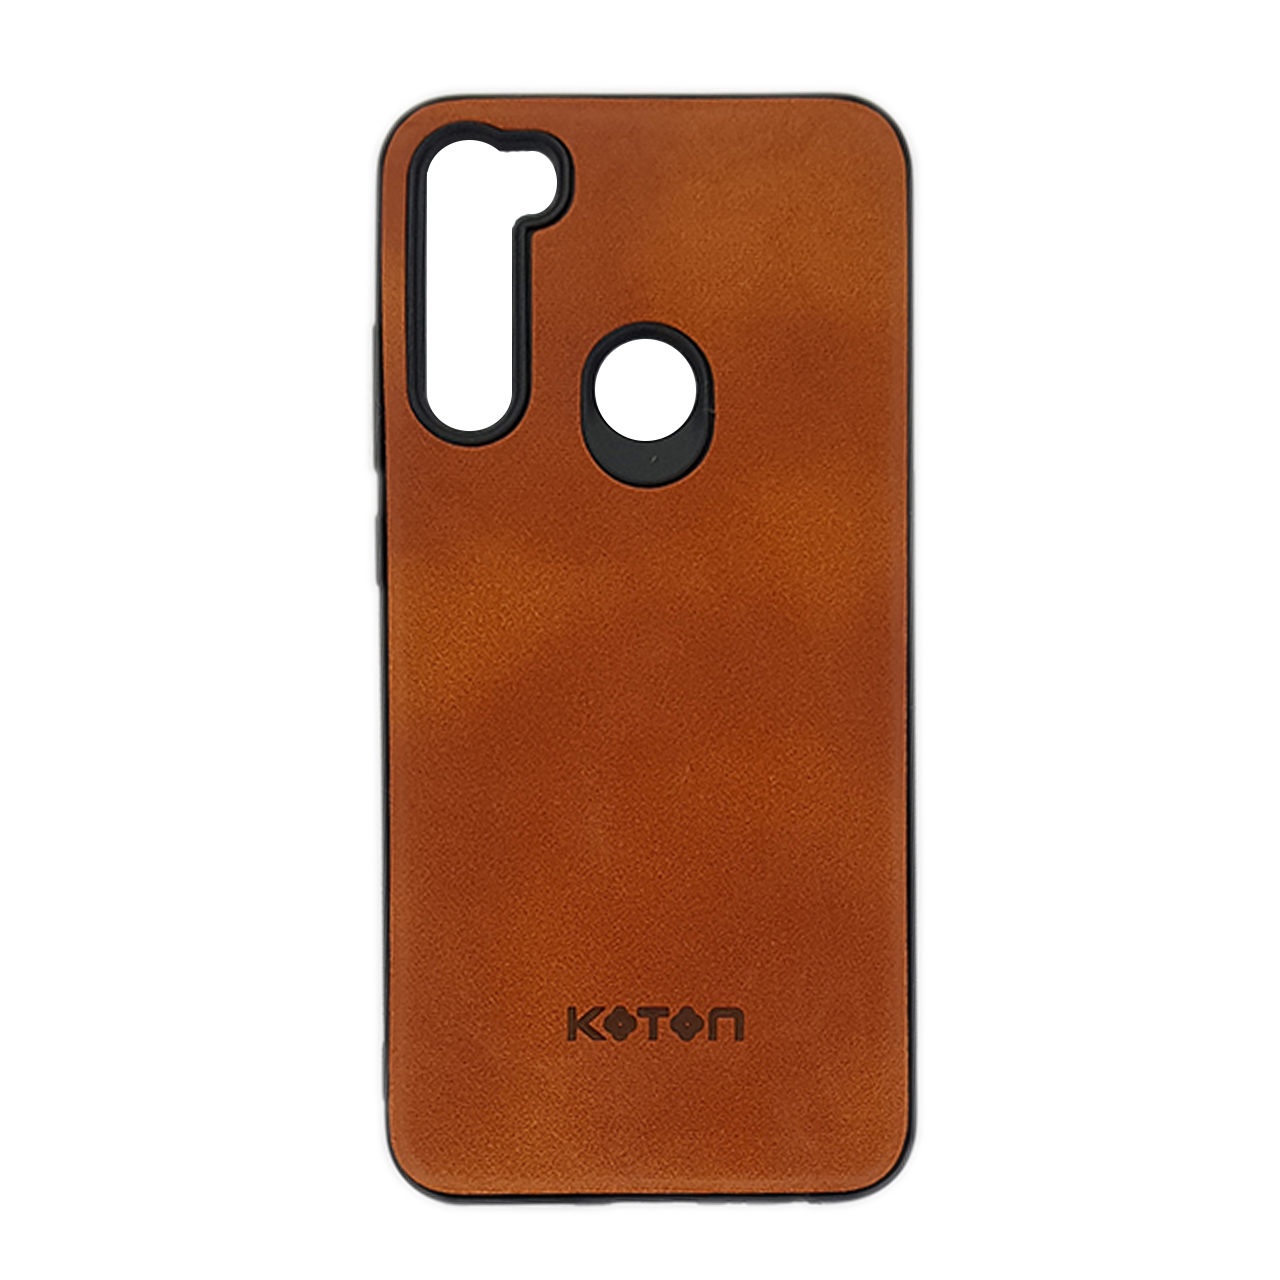 کاور کوتون مدل KO5T7 مناسب برای گوشی موبایل شیائومی Redmi Note 8